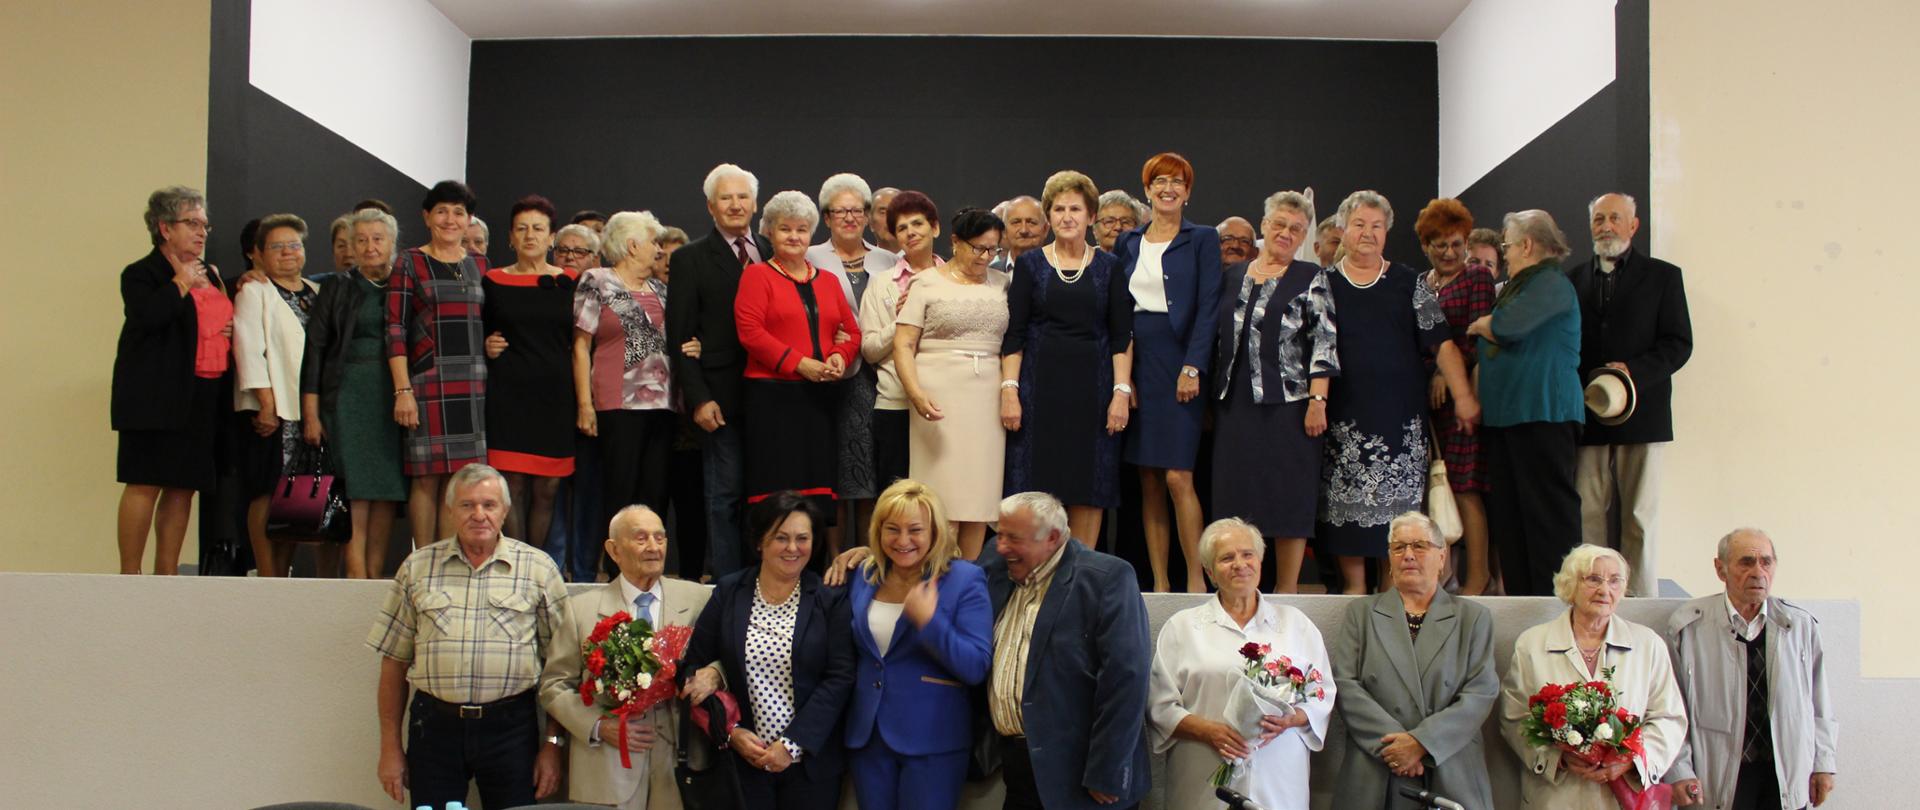 Otwarcie Klubu Senior+ w Szlichtyngowej. Na zdjęciu minister rodziny Elżbieta Rafalska wraz z seniorami, uczestnikami uroczystości. 